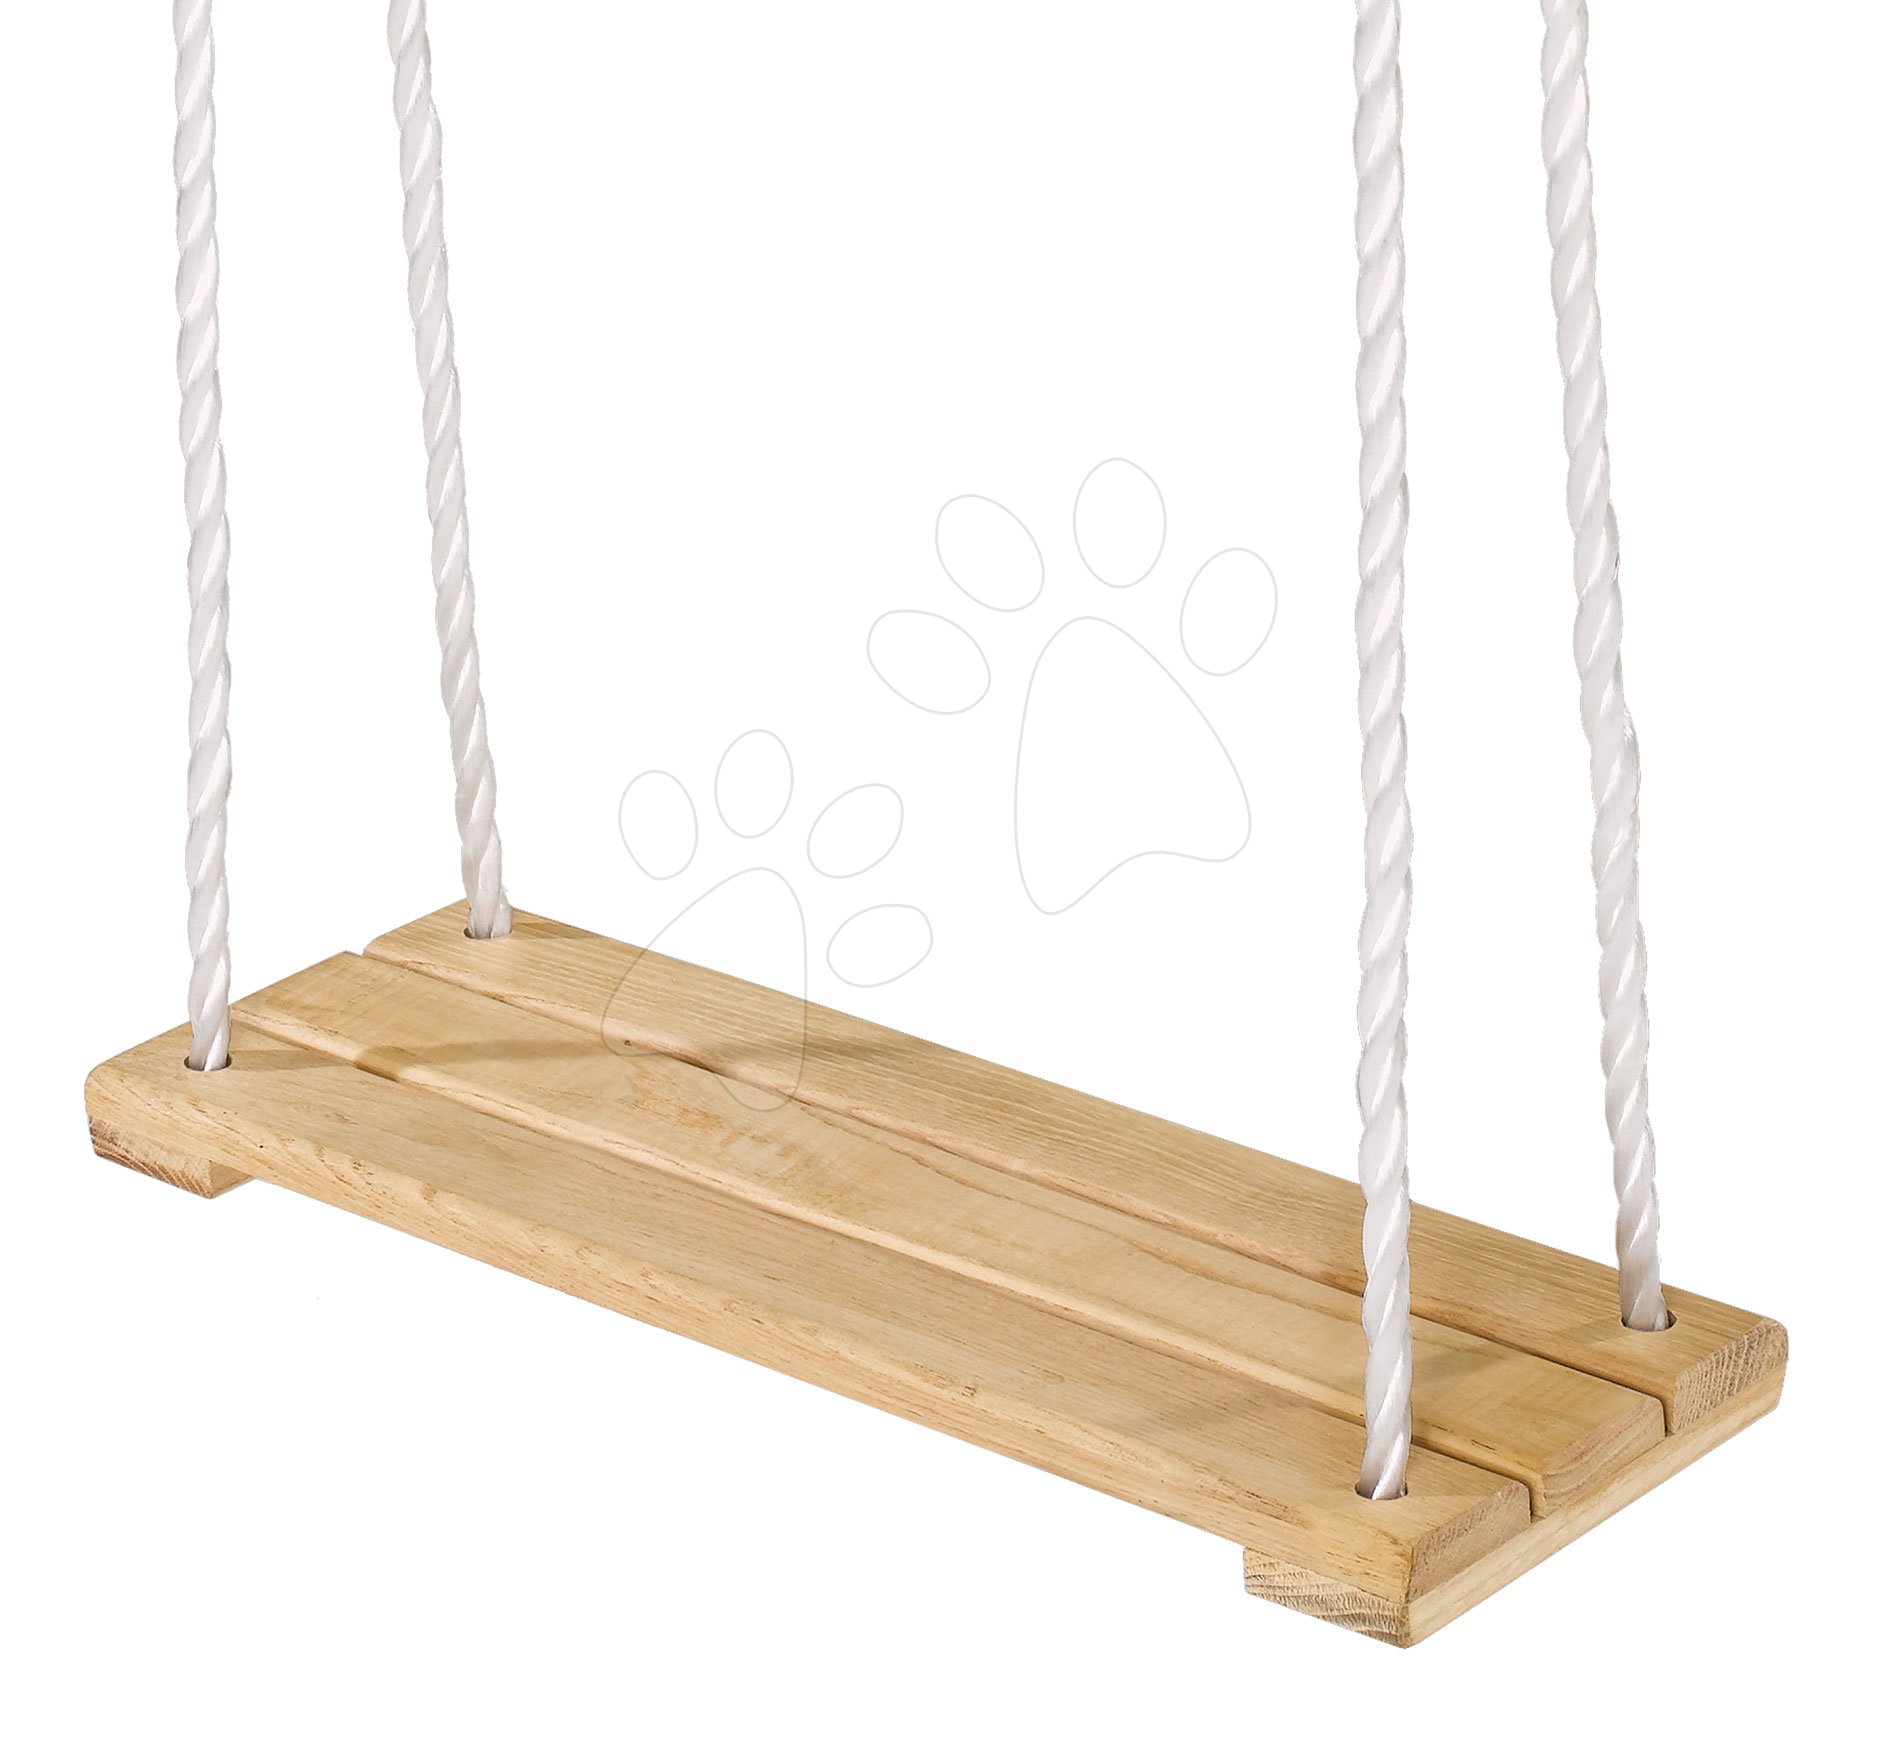 Drevená hojdačka plocha Plank Swing Outdoor Eichhorn prírodná 140-210 cm dĺžka 40*14 cm a 60 kg nosnosť